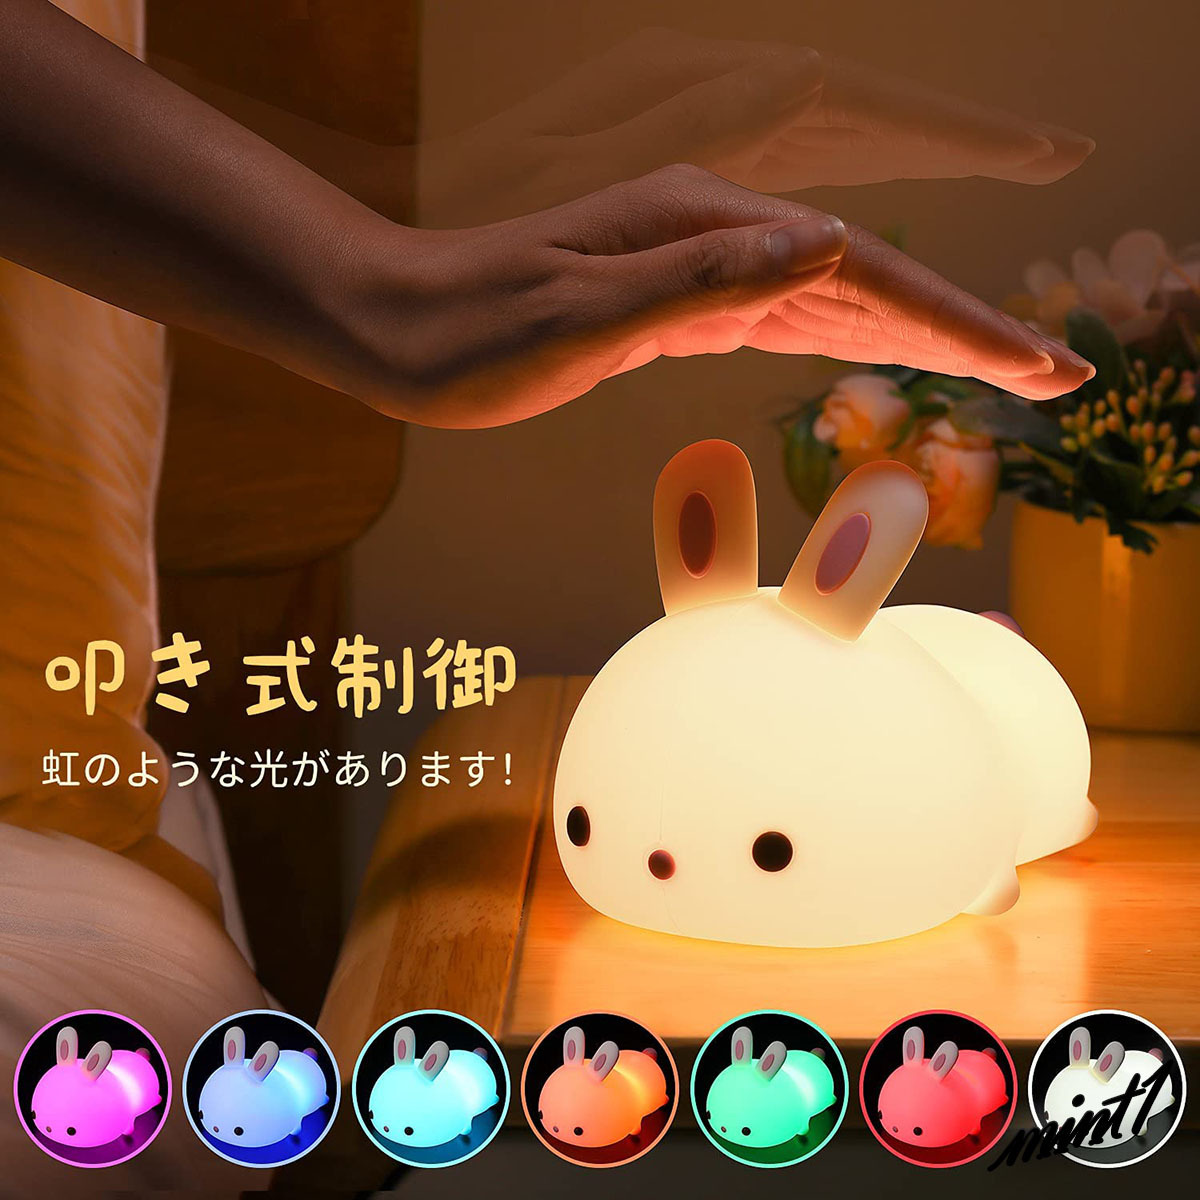 【可愛いウサギが優しく楽しく照らす】 LED ナイトライト テーブルスタンド 7色変色 無段階調光 タイマー タッチ式 リモコン コードレス